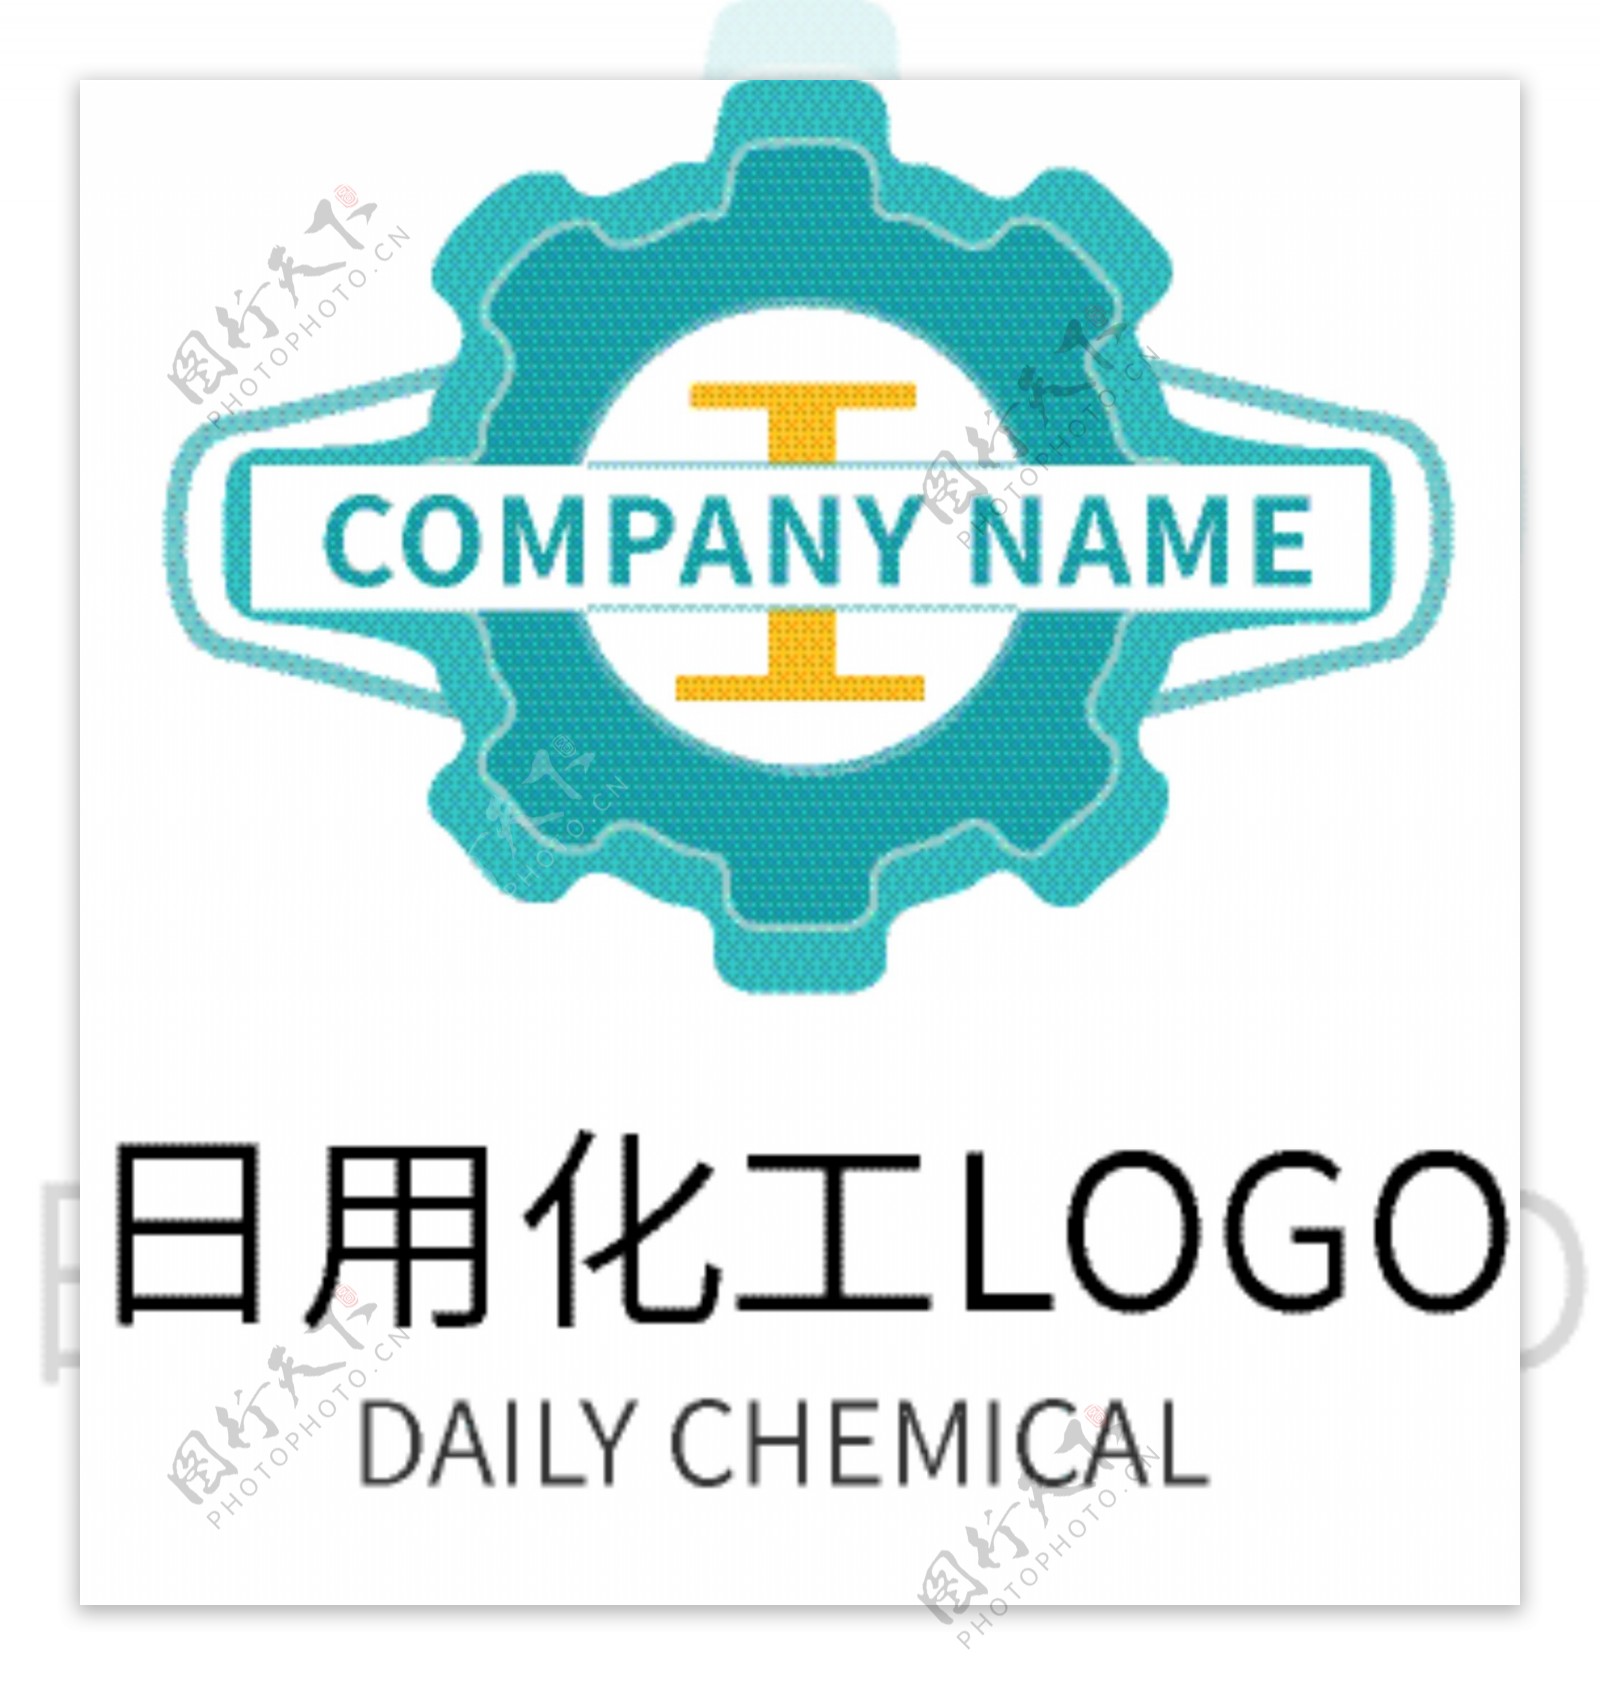 日用化工商务企业logo